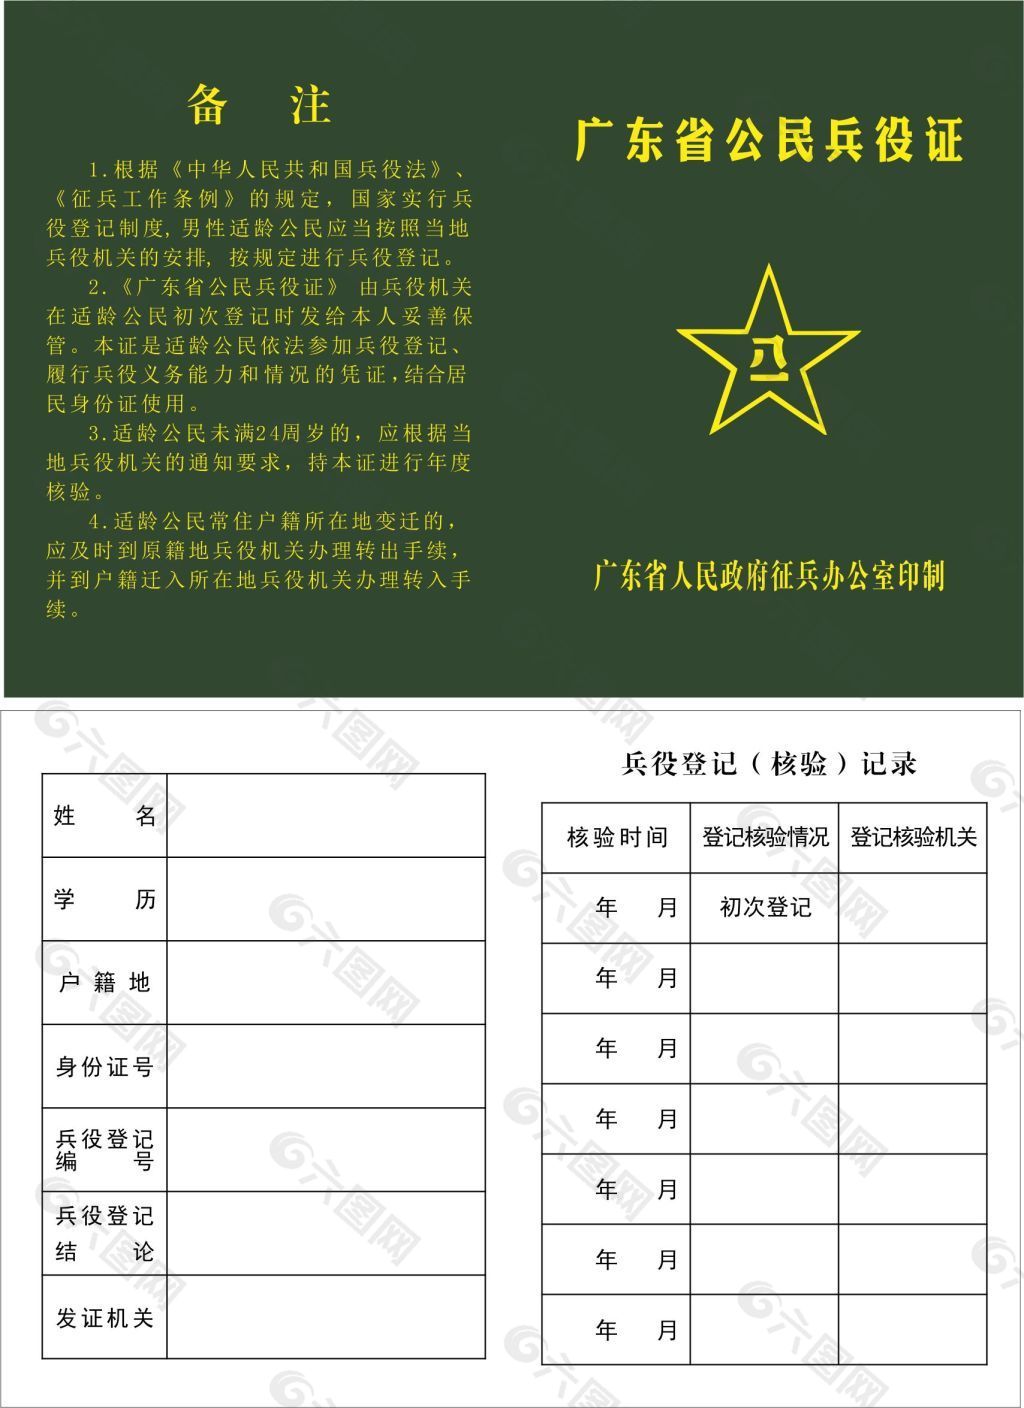 广东省公民兵役证